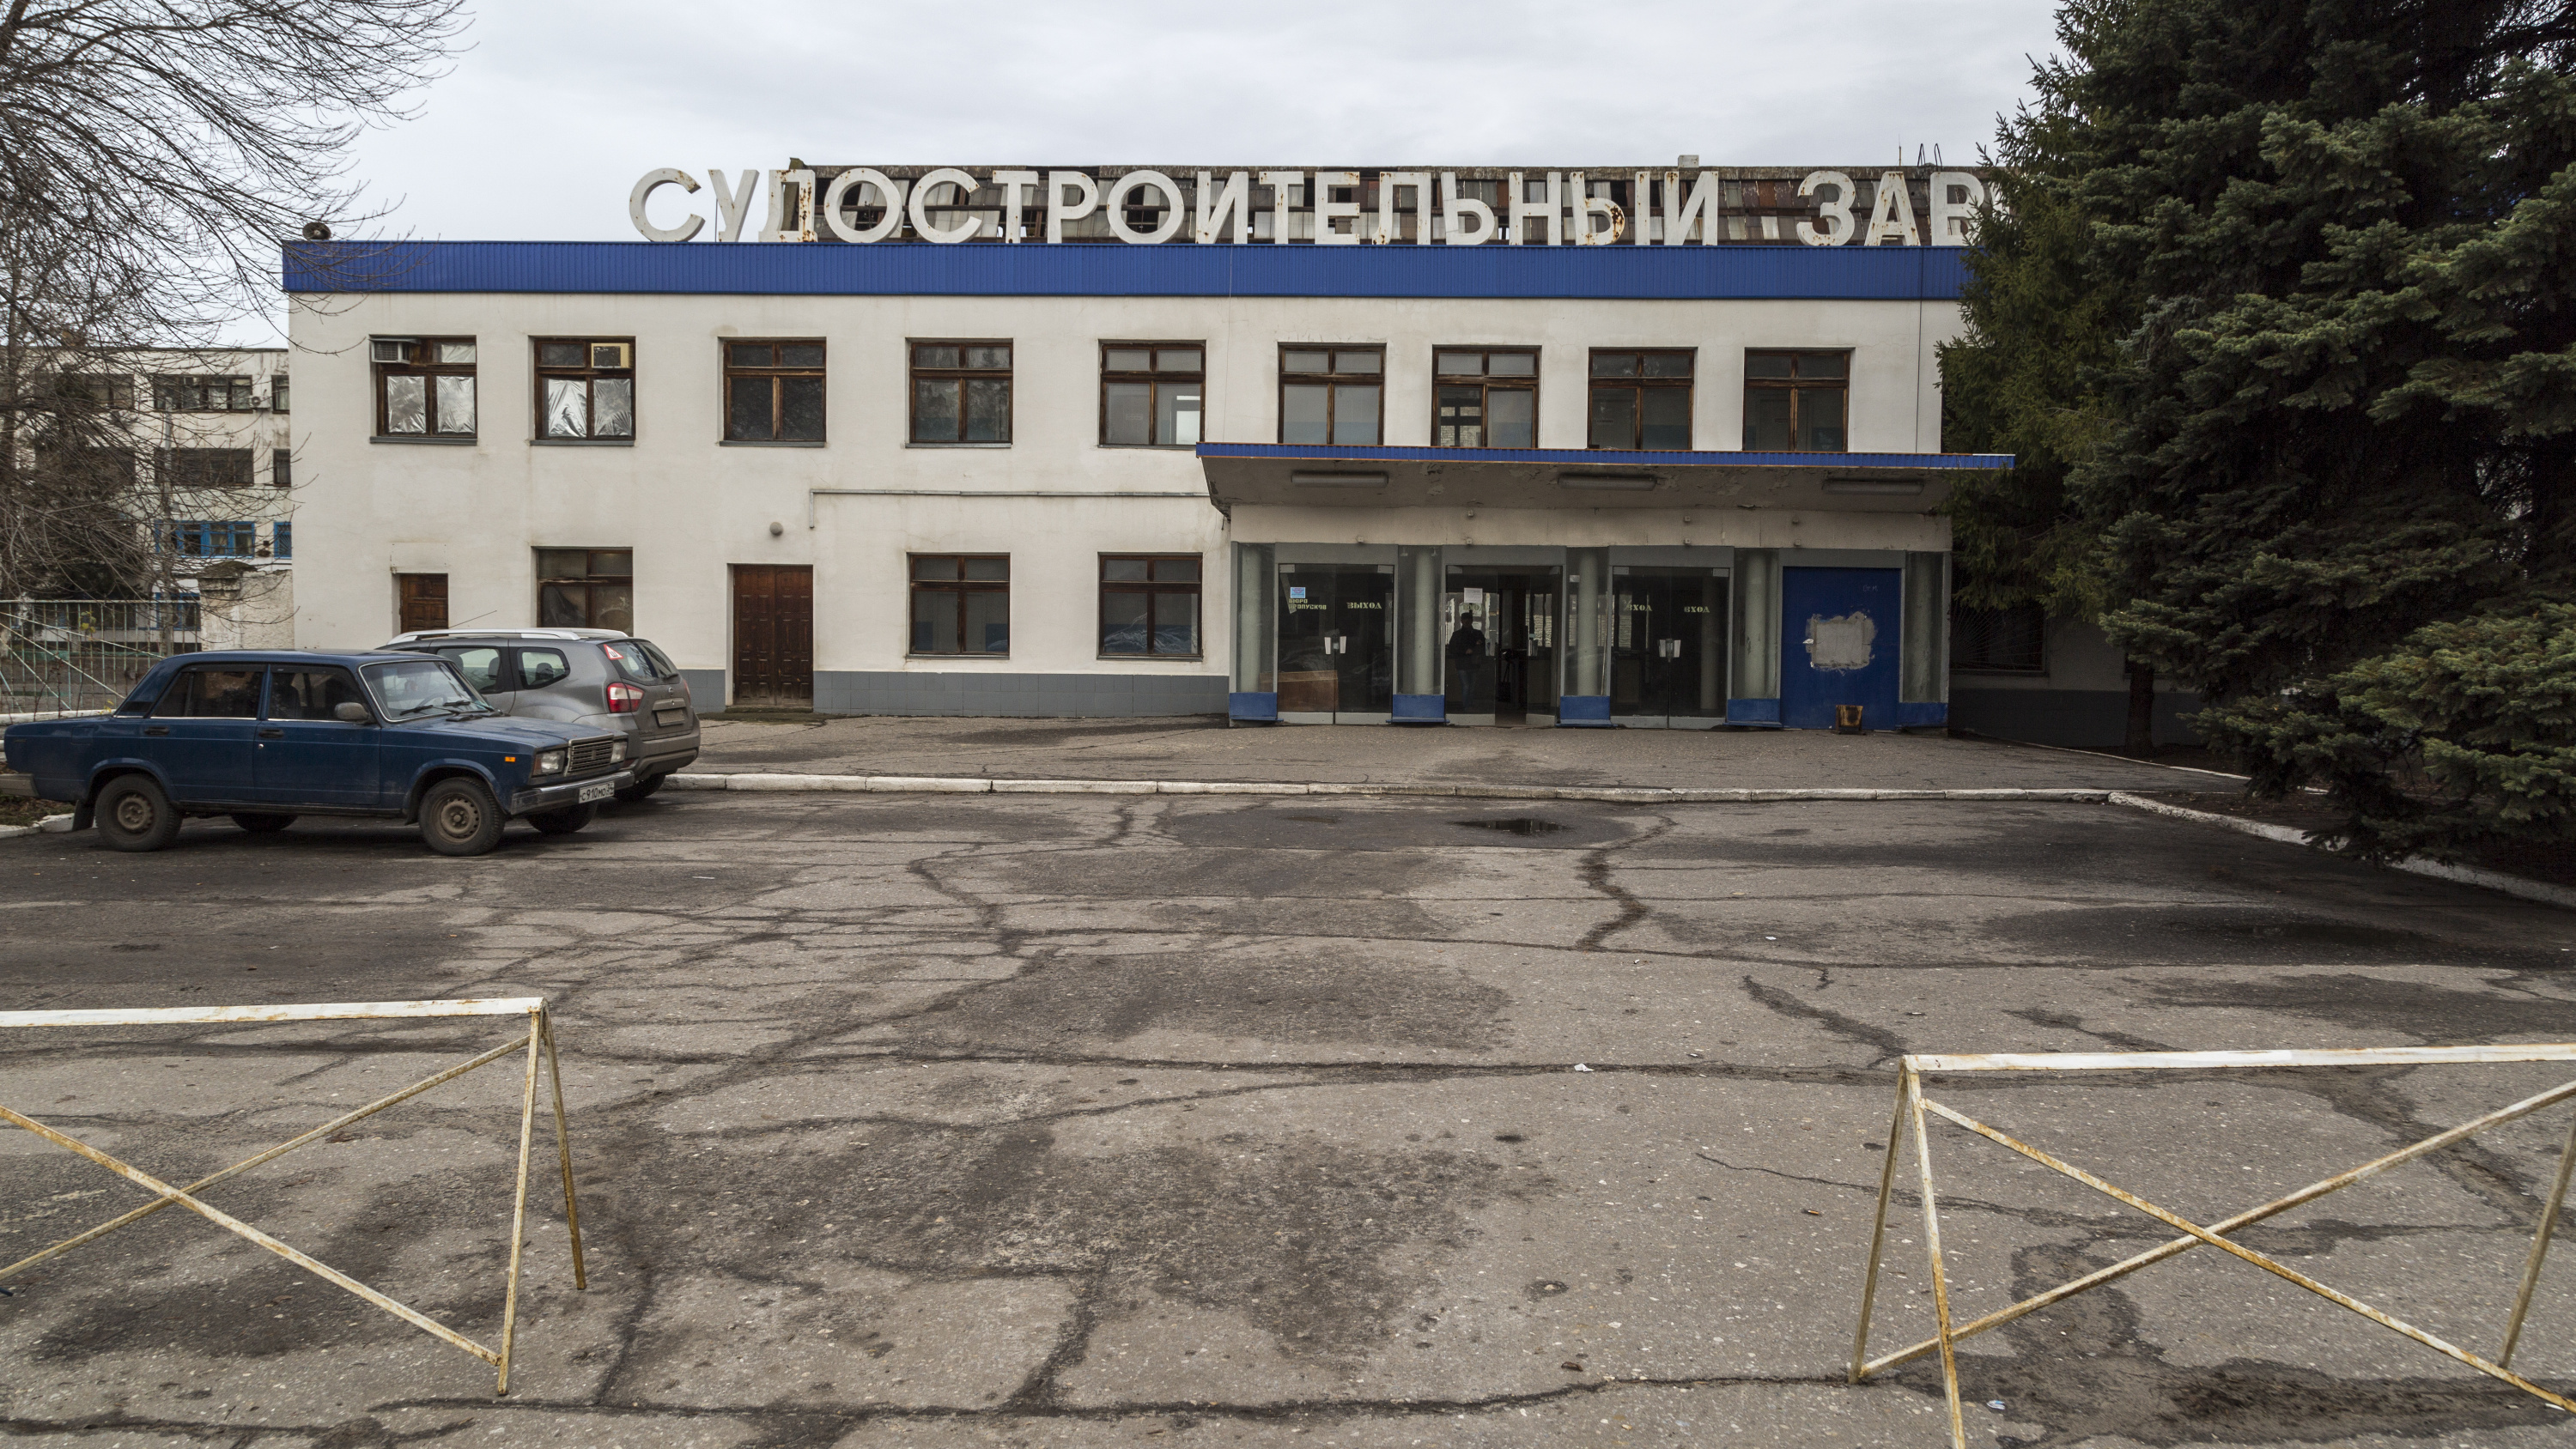 В Волгограде депутаты решили взять под контроль принадлежащий уроженцам Чечни судостроительный завод